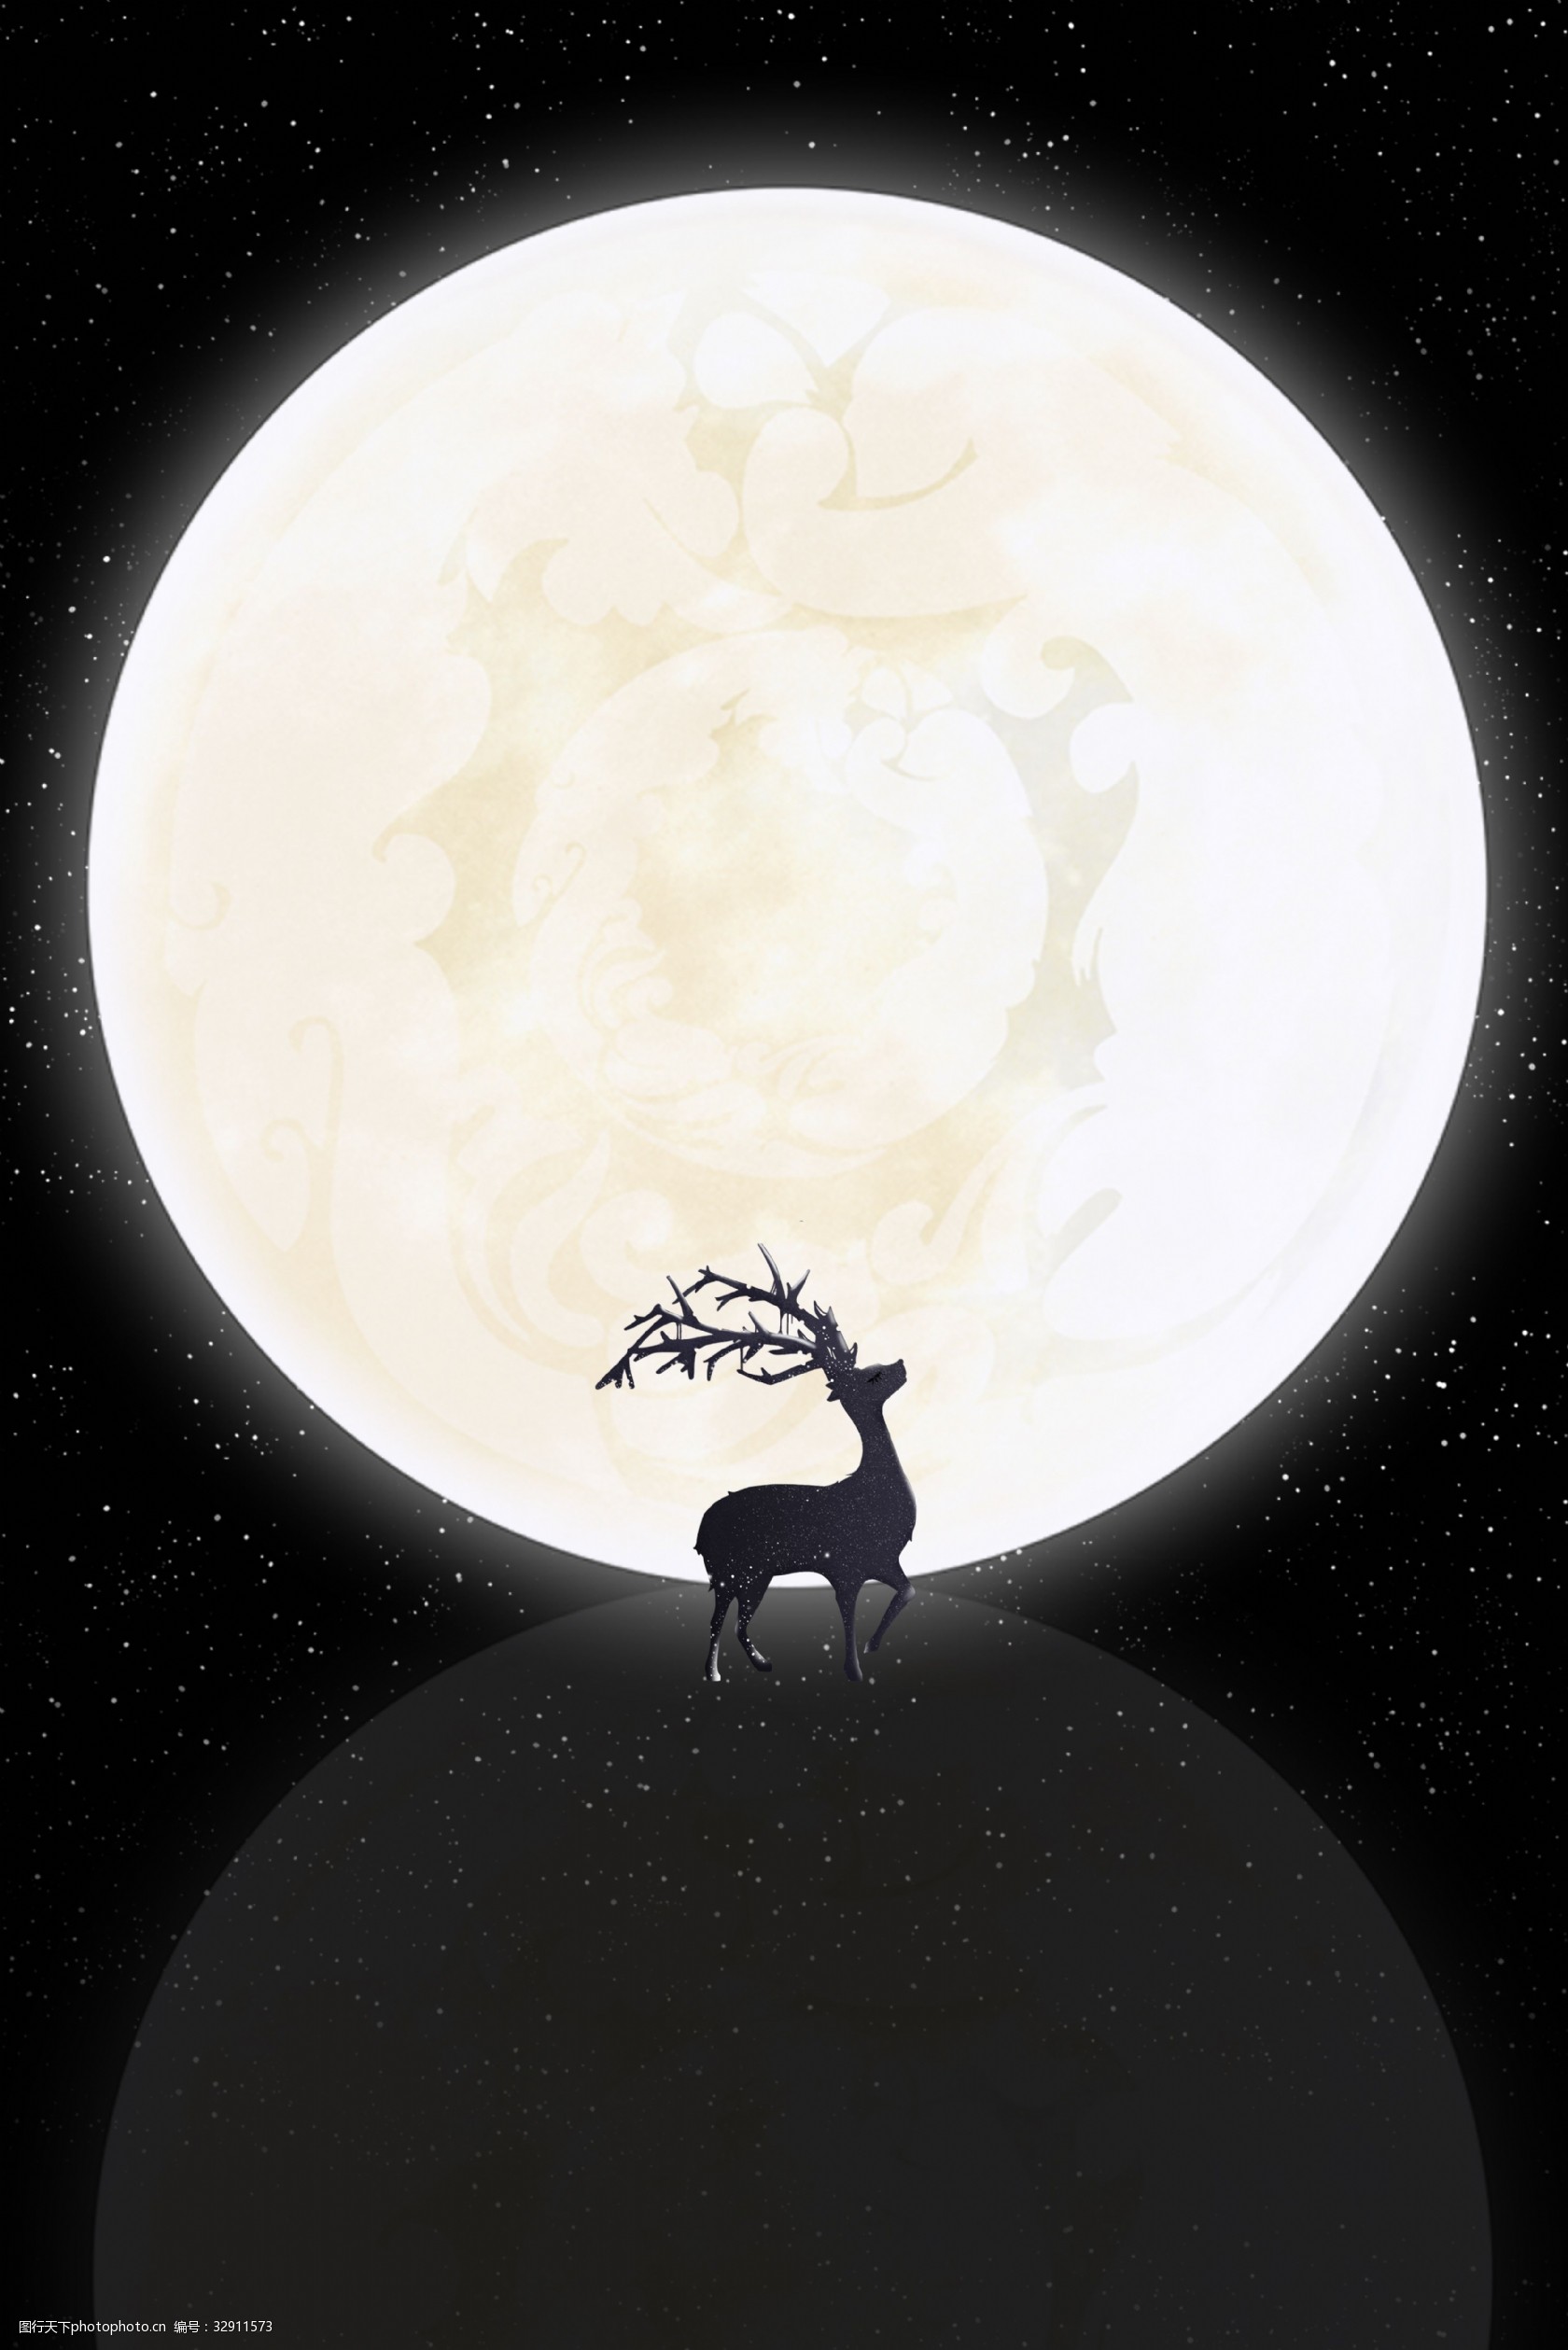 晚安问候月亮麋鹿唯美背景 晚安 问候 月亮 麋鹿 唯美 文艺 质感 剪影